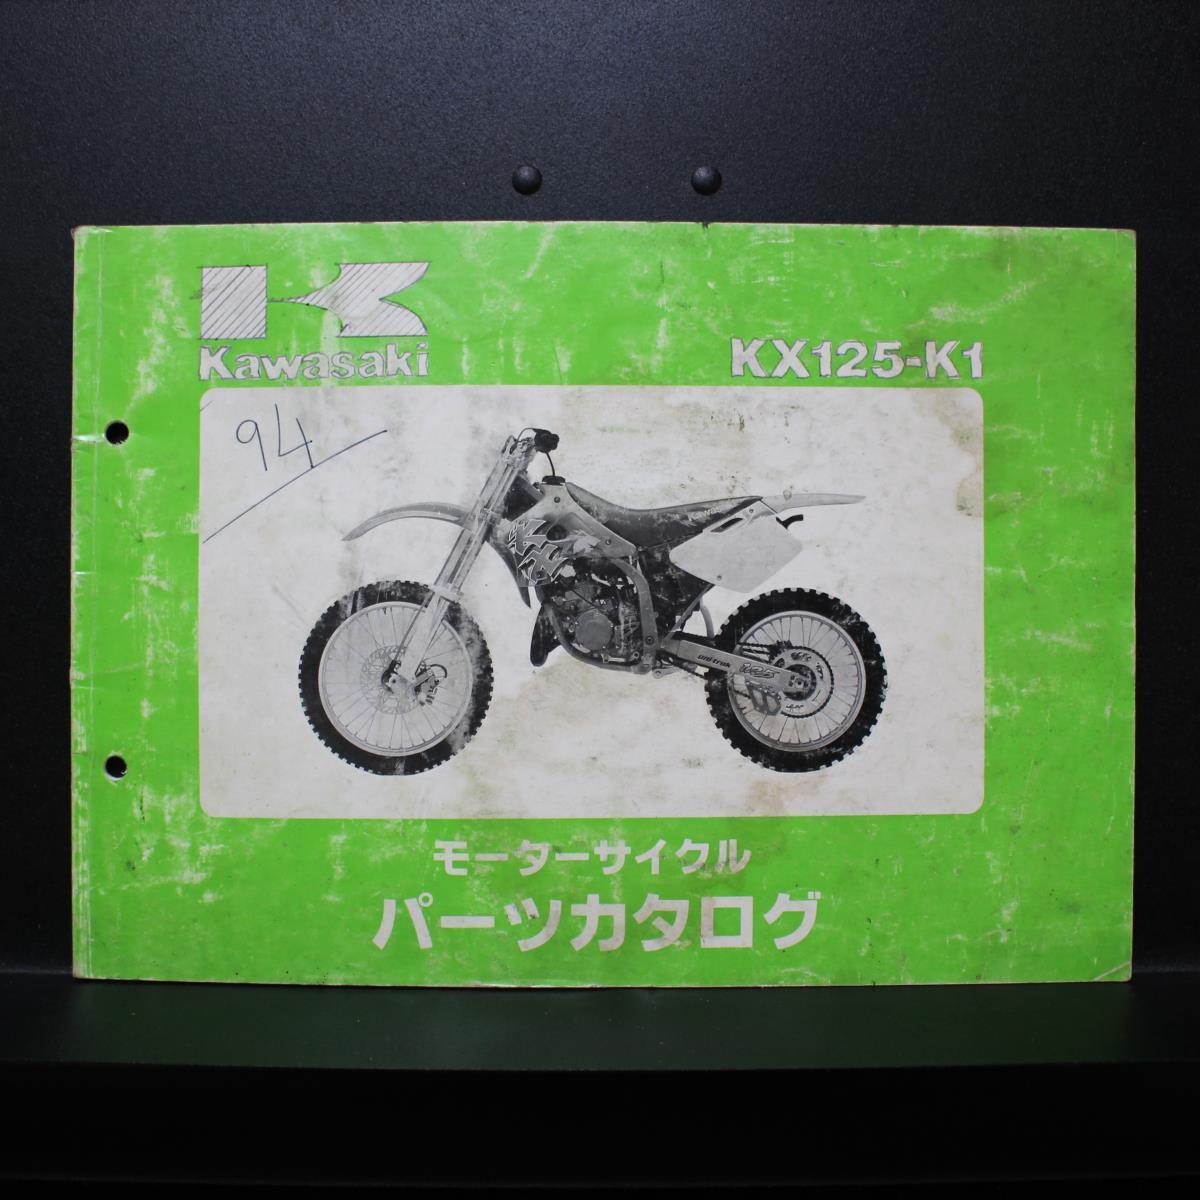 Kawasaki｜'94 KX125-K1｜モーターサイクル パーツカタログ｜1993年8月発行,平成5年8月発行｜99911-1243-01｜カワサキ｜210098_画像1